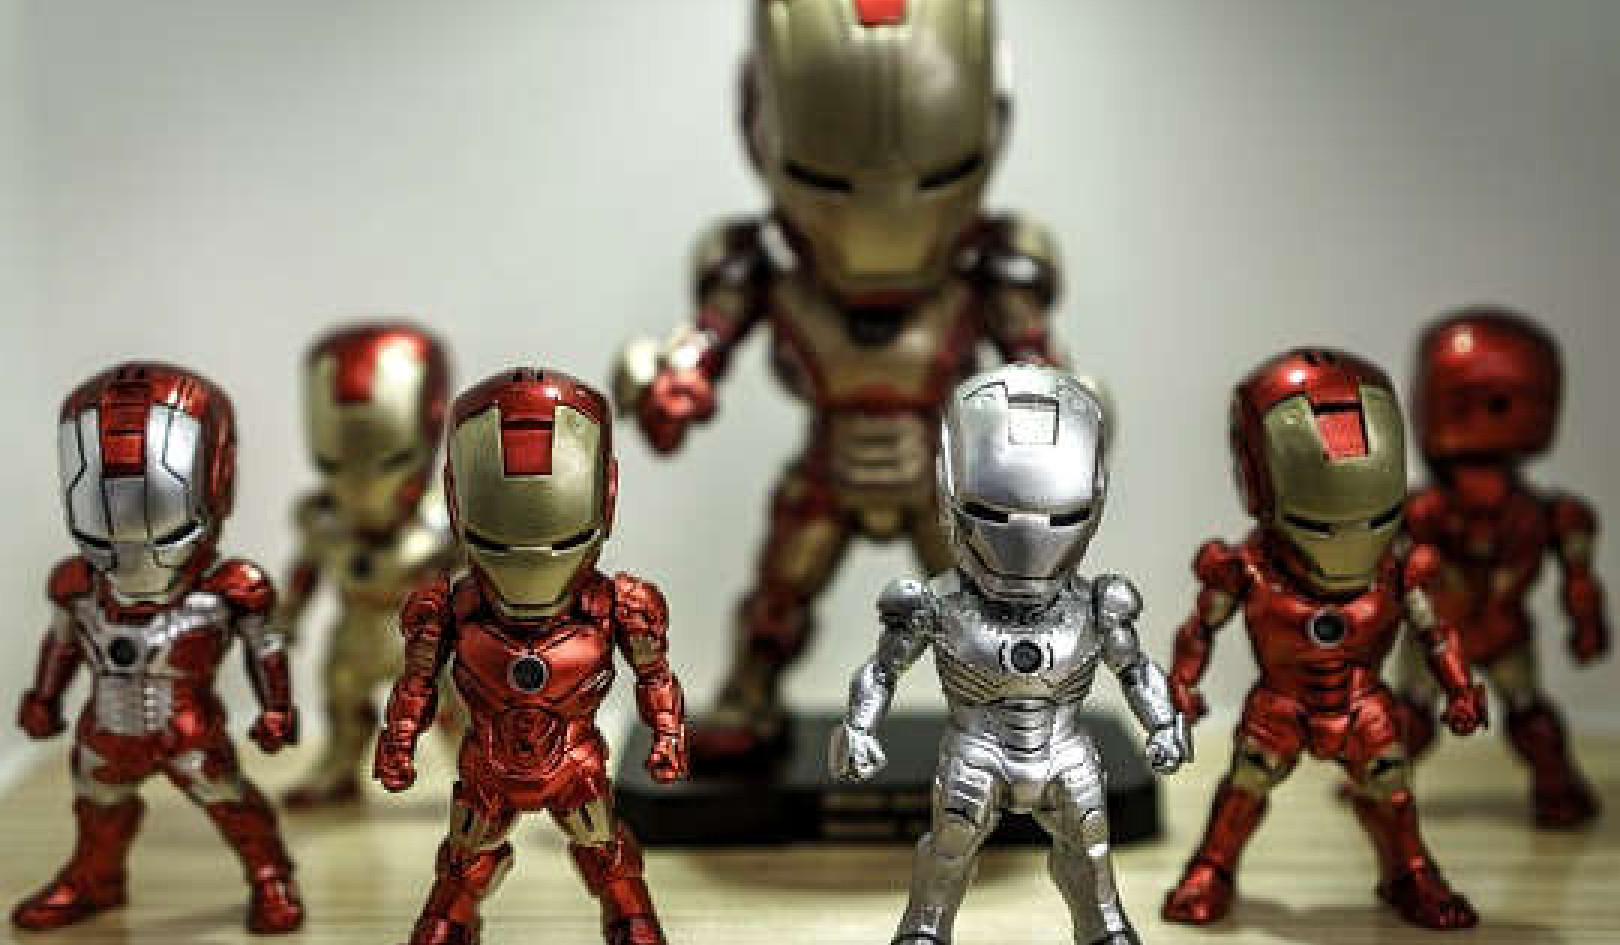 Iron Man: Distraction or Awakening?